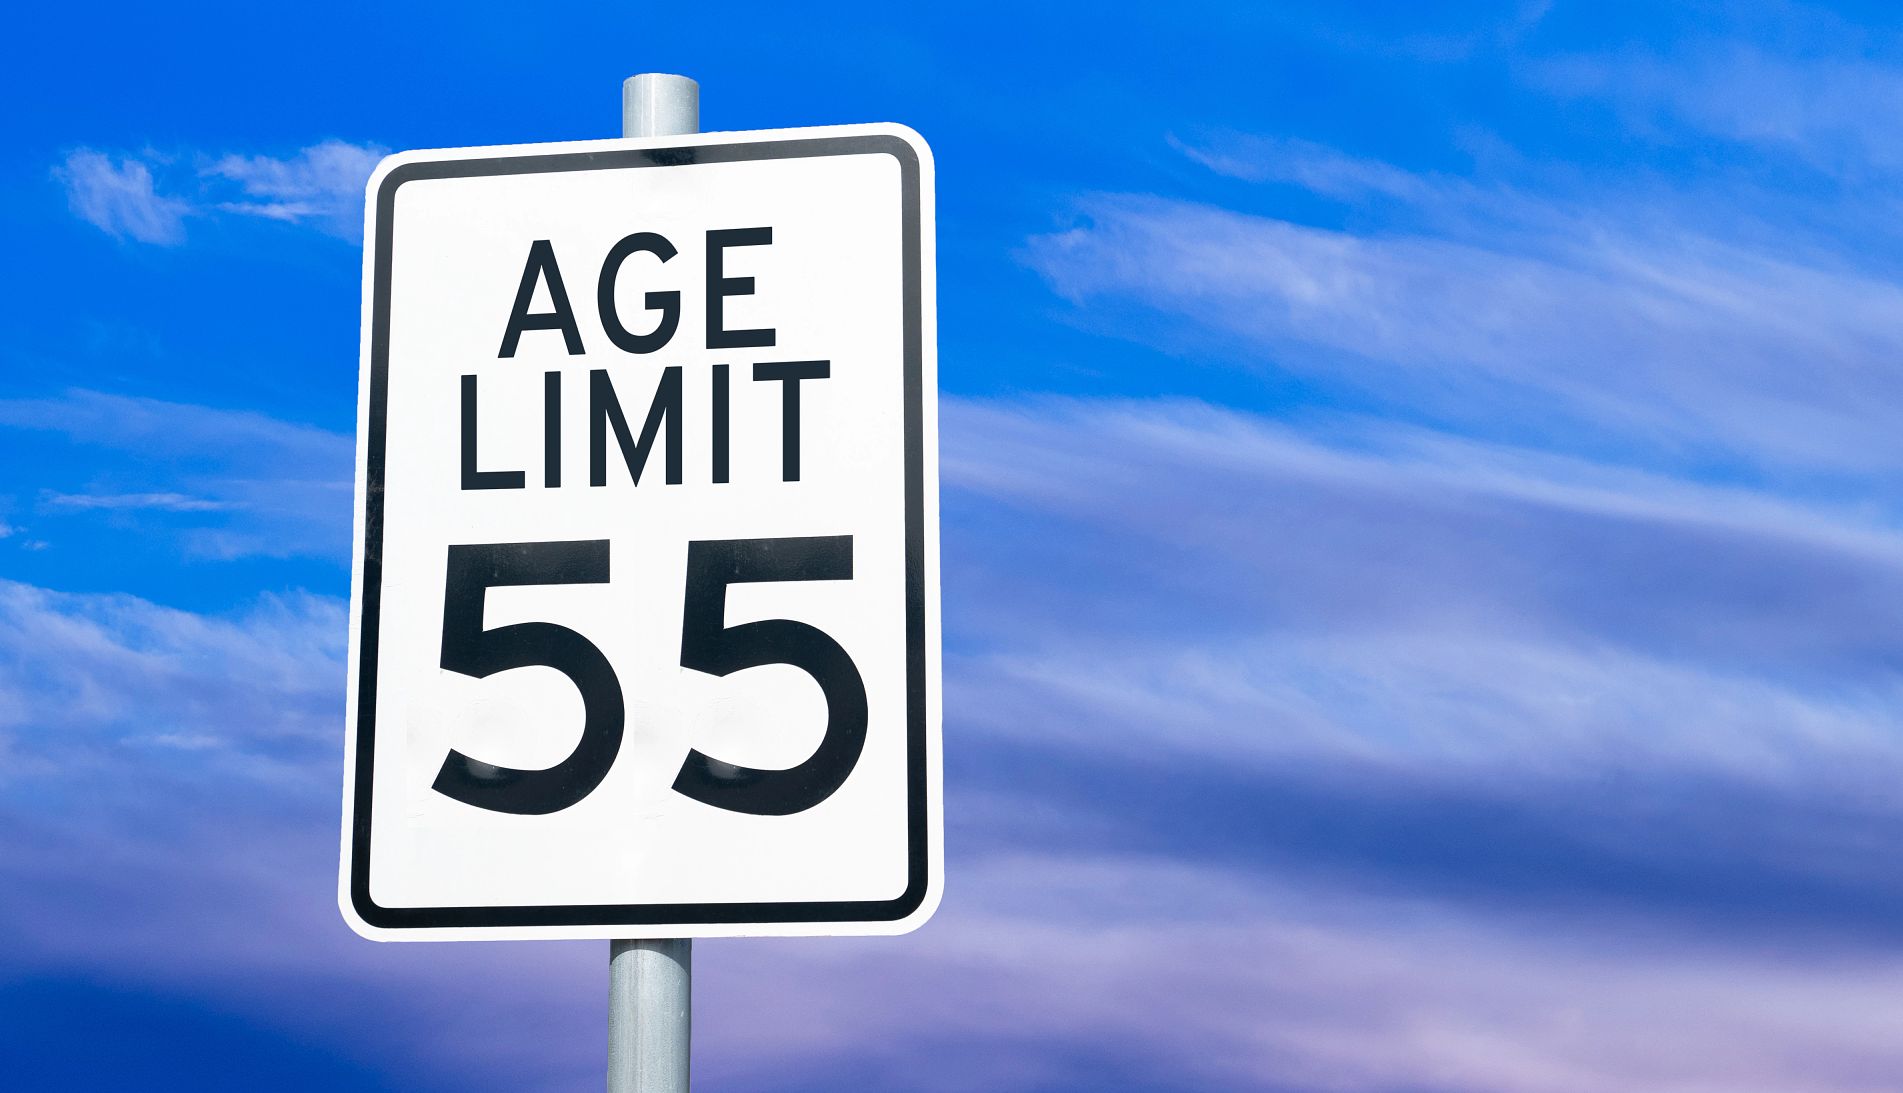 una señal de velocidad con límite de edad de 55 años